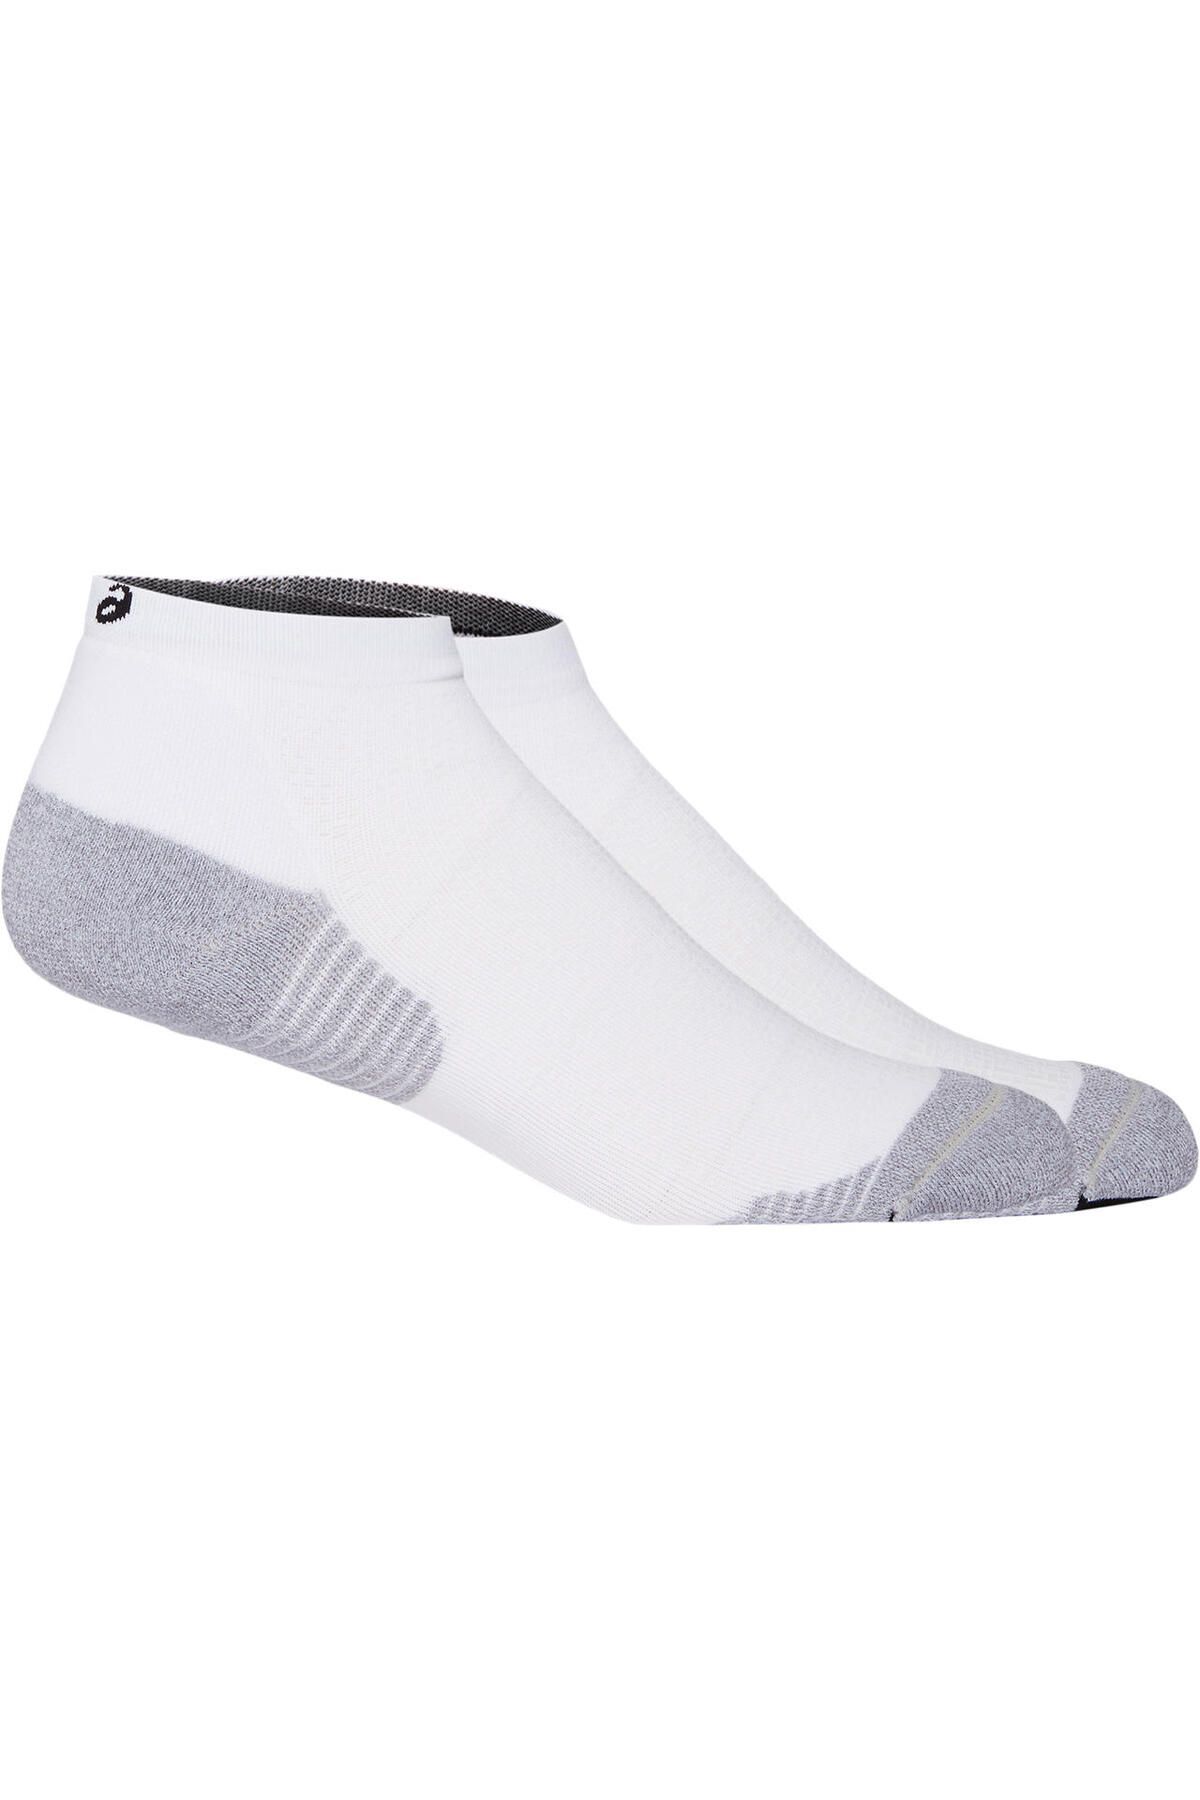 Asics Sprintride Run Quarter Sock Unisex Beyaz Çorap 3013a797-100